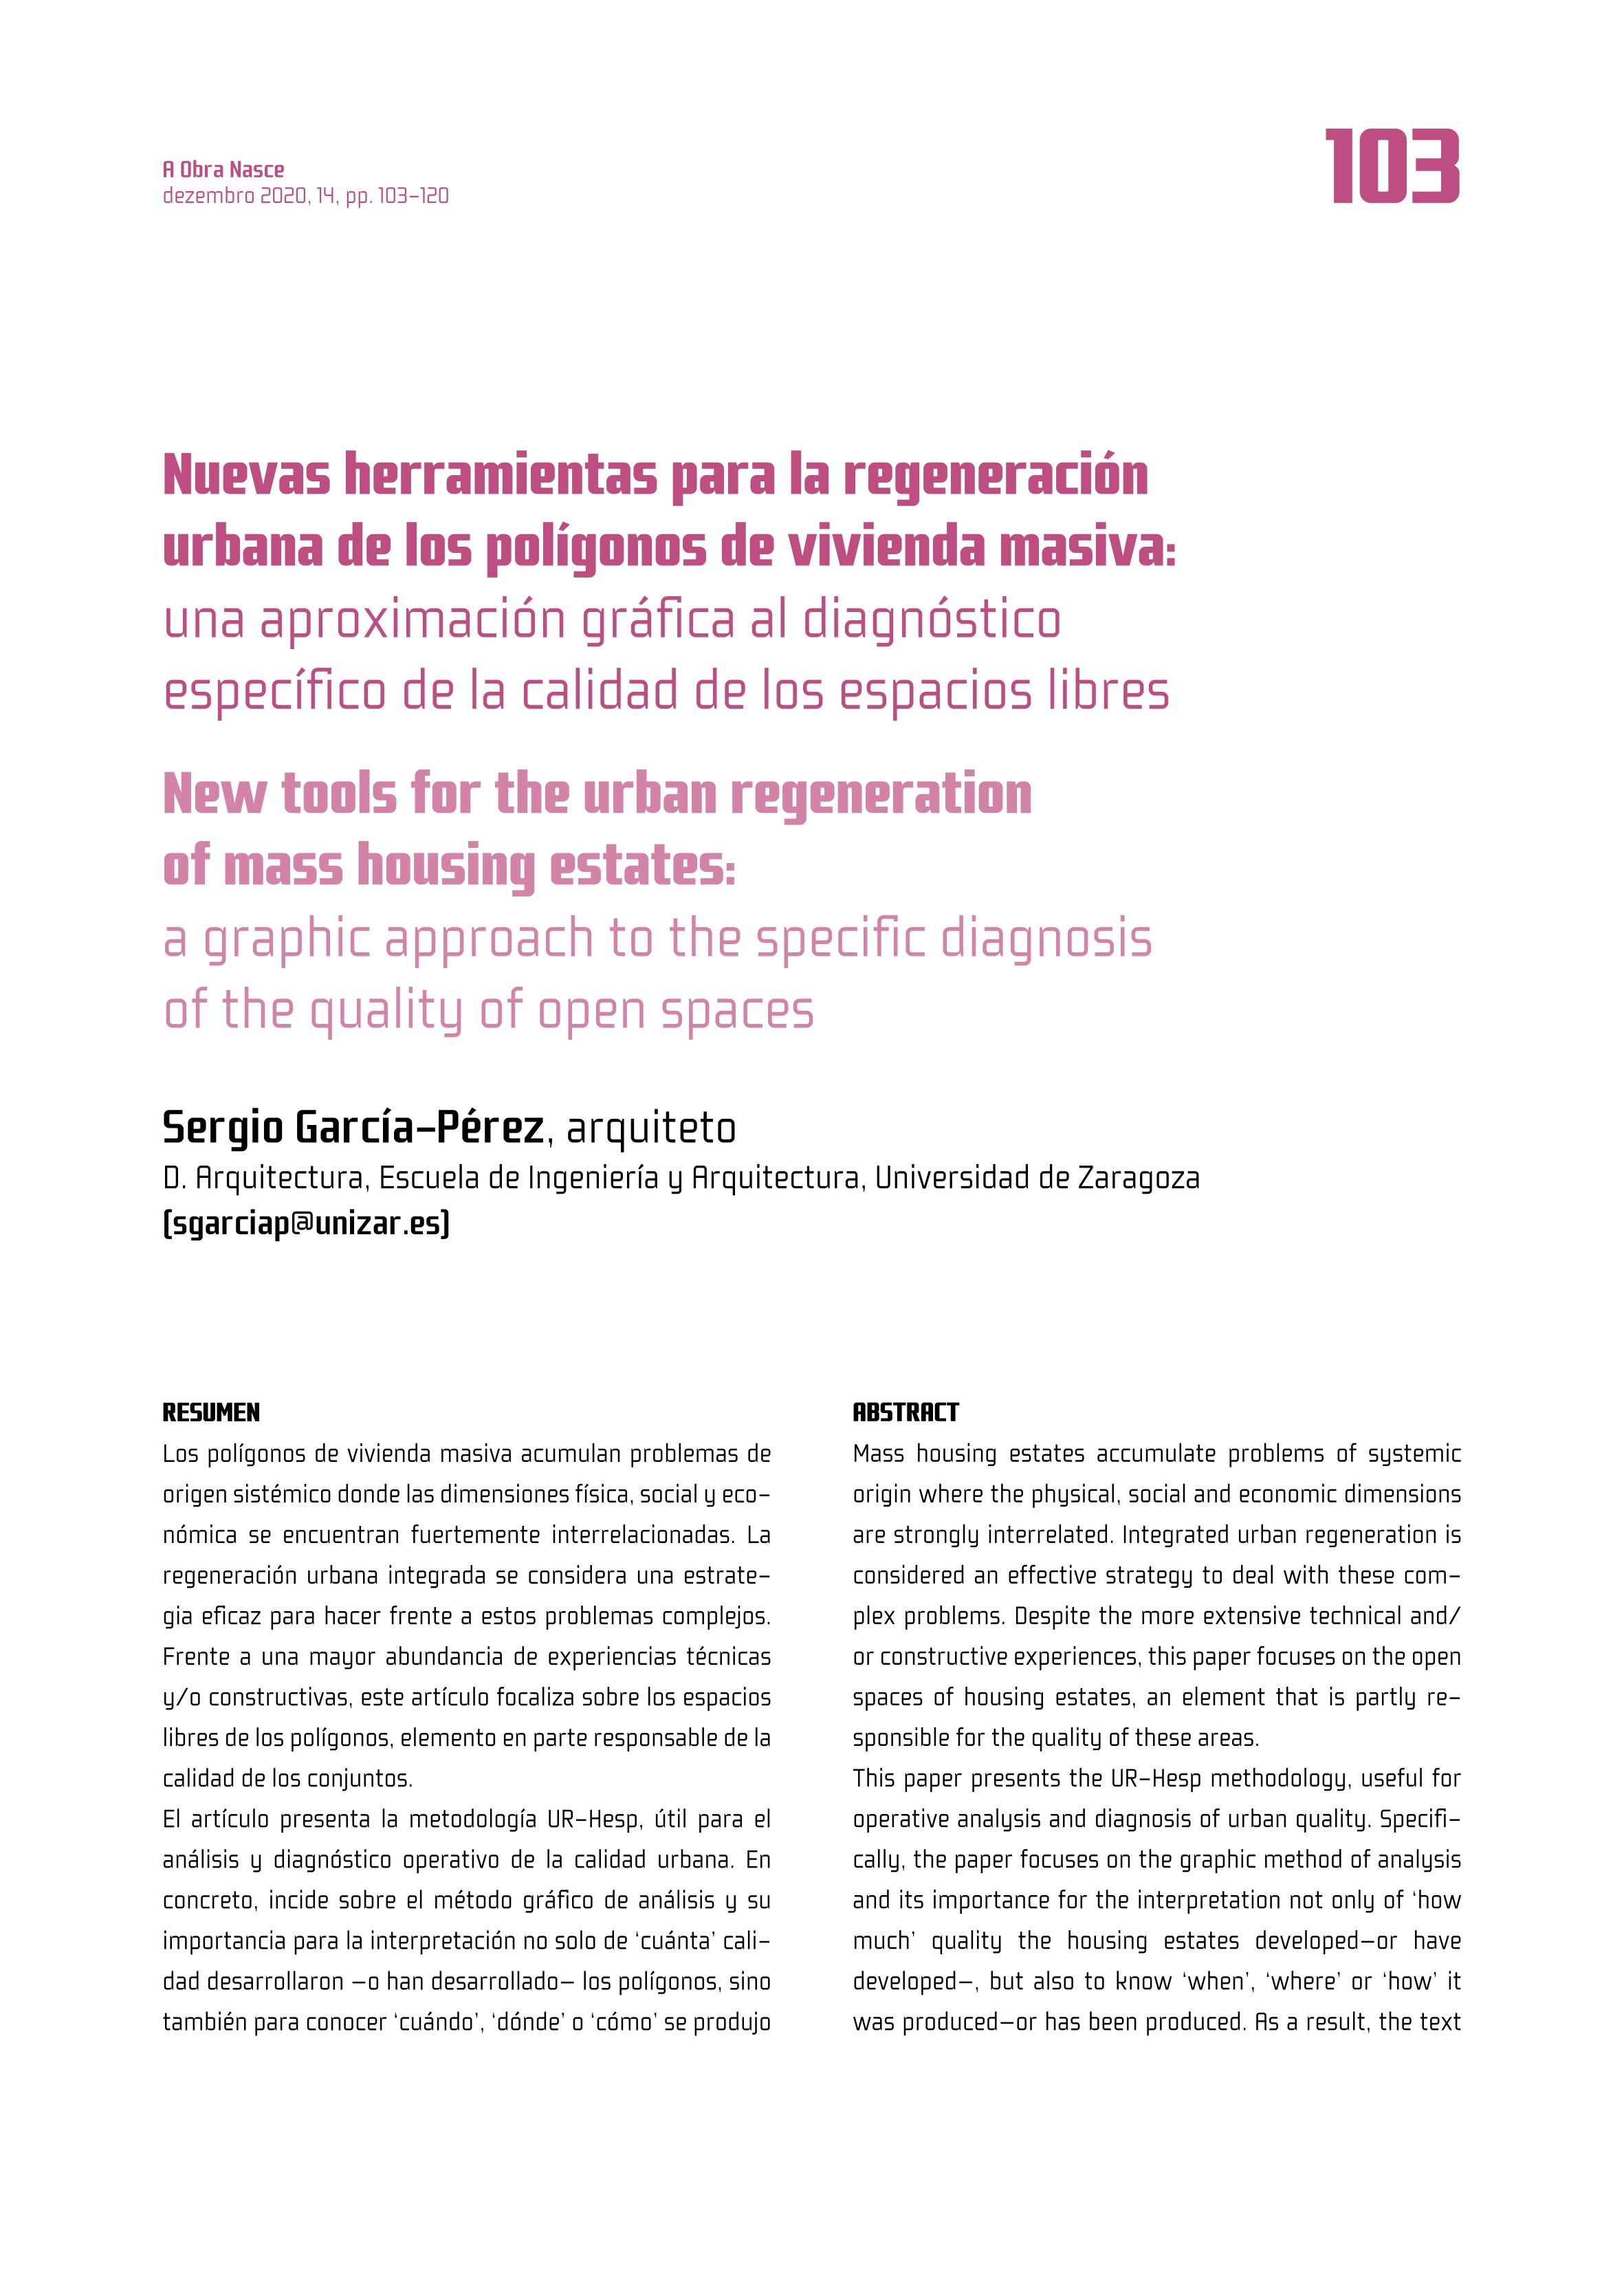 Nuevas herramientas para la regeneración urbana de los polígonos de vivienda masiva: una aproximación gráfica al diagnóstico específico de la calidad de los espacios libres